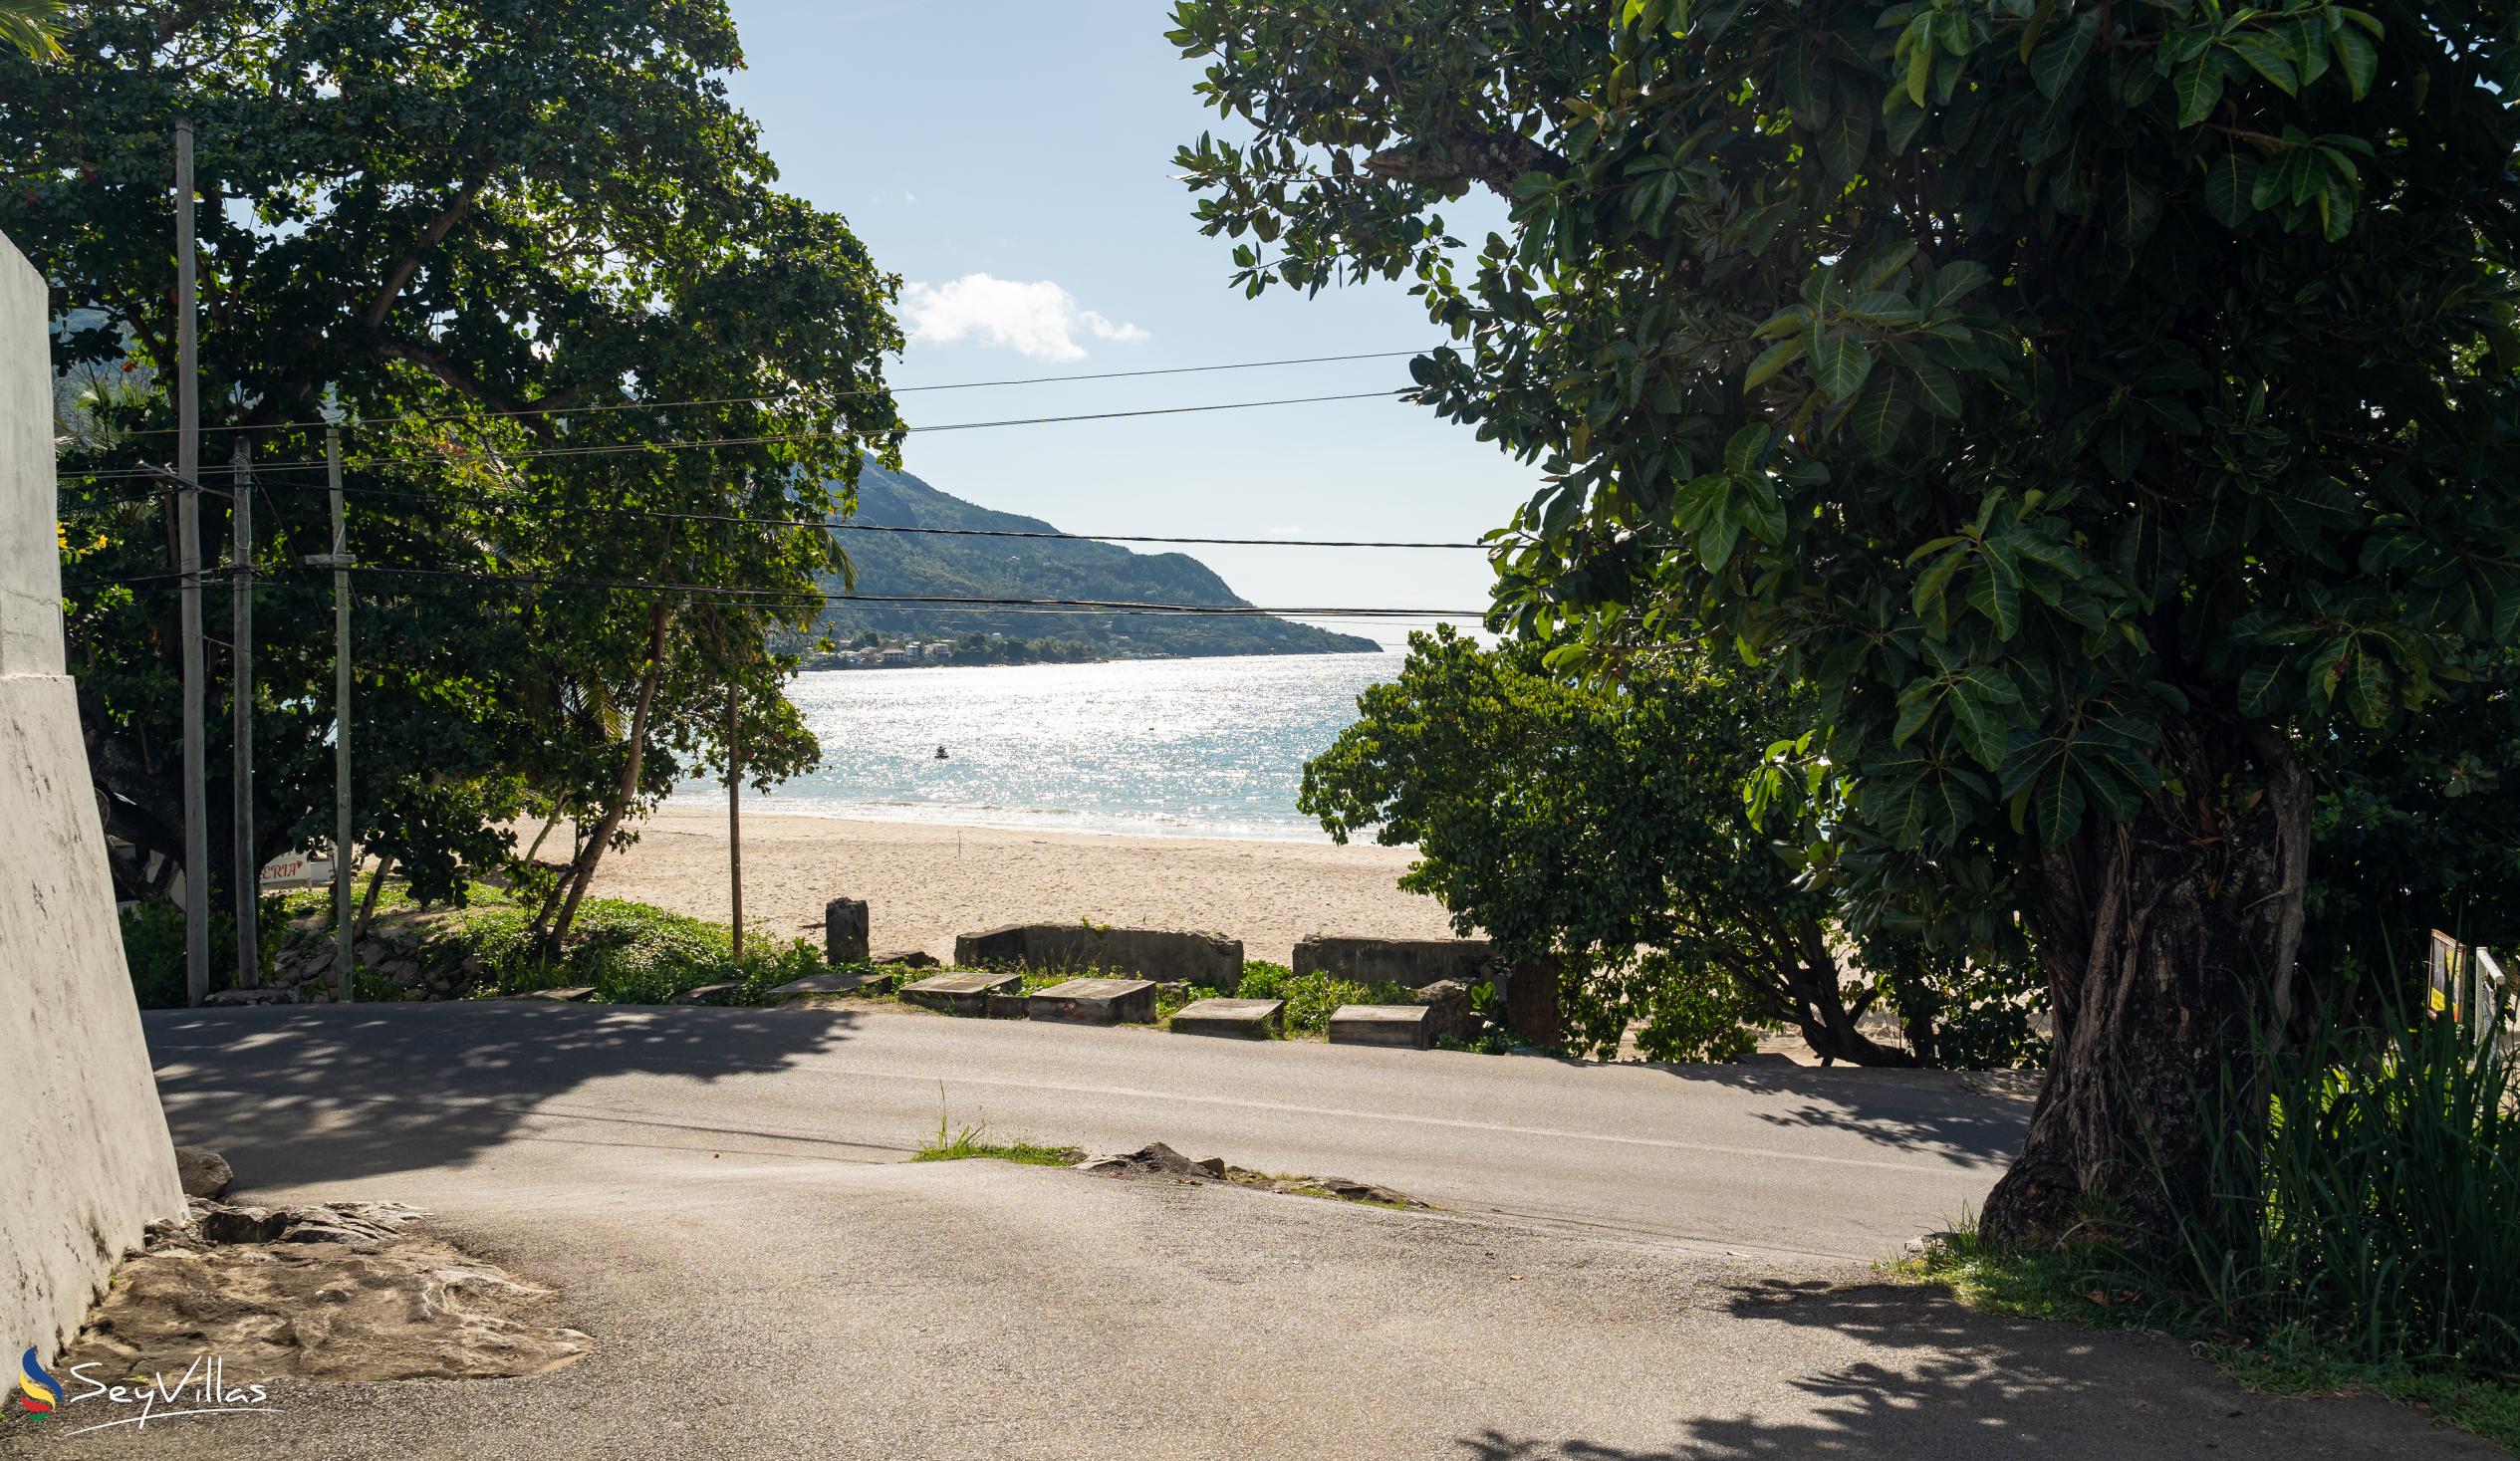 Foto 53: Jbilla Self Catering - Posizione - Mahé (Seychelles)